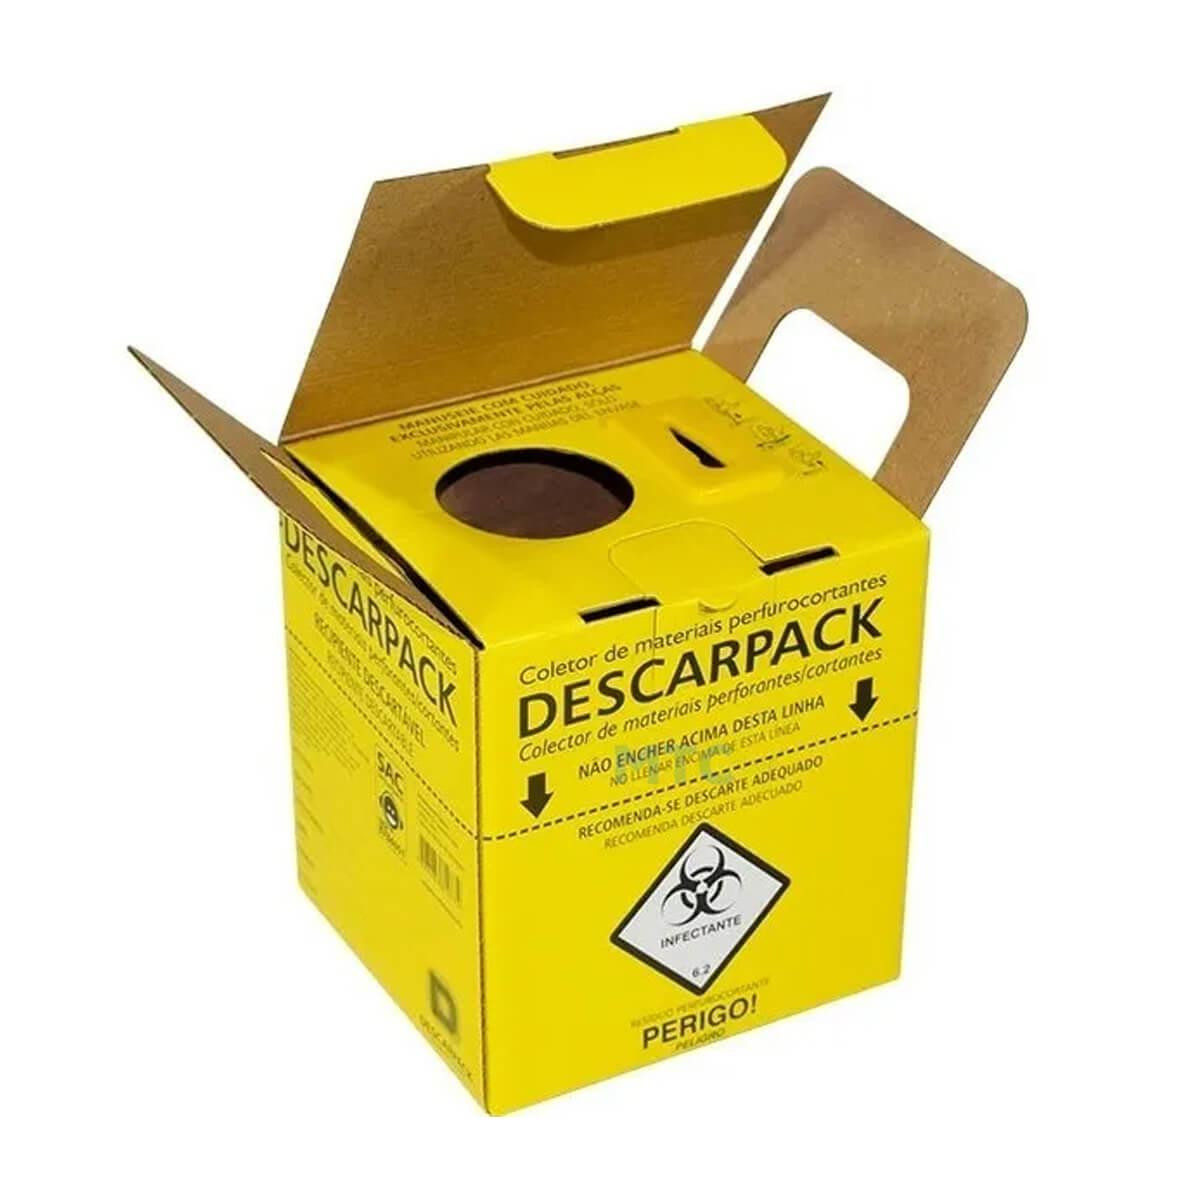 Caixa Coletora de Material Perfurocortante - Descarpack